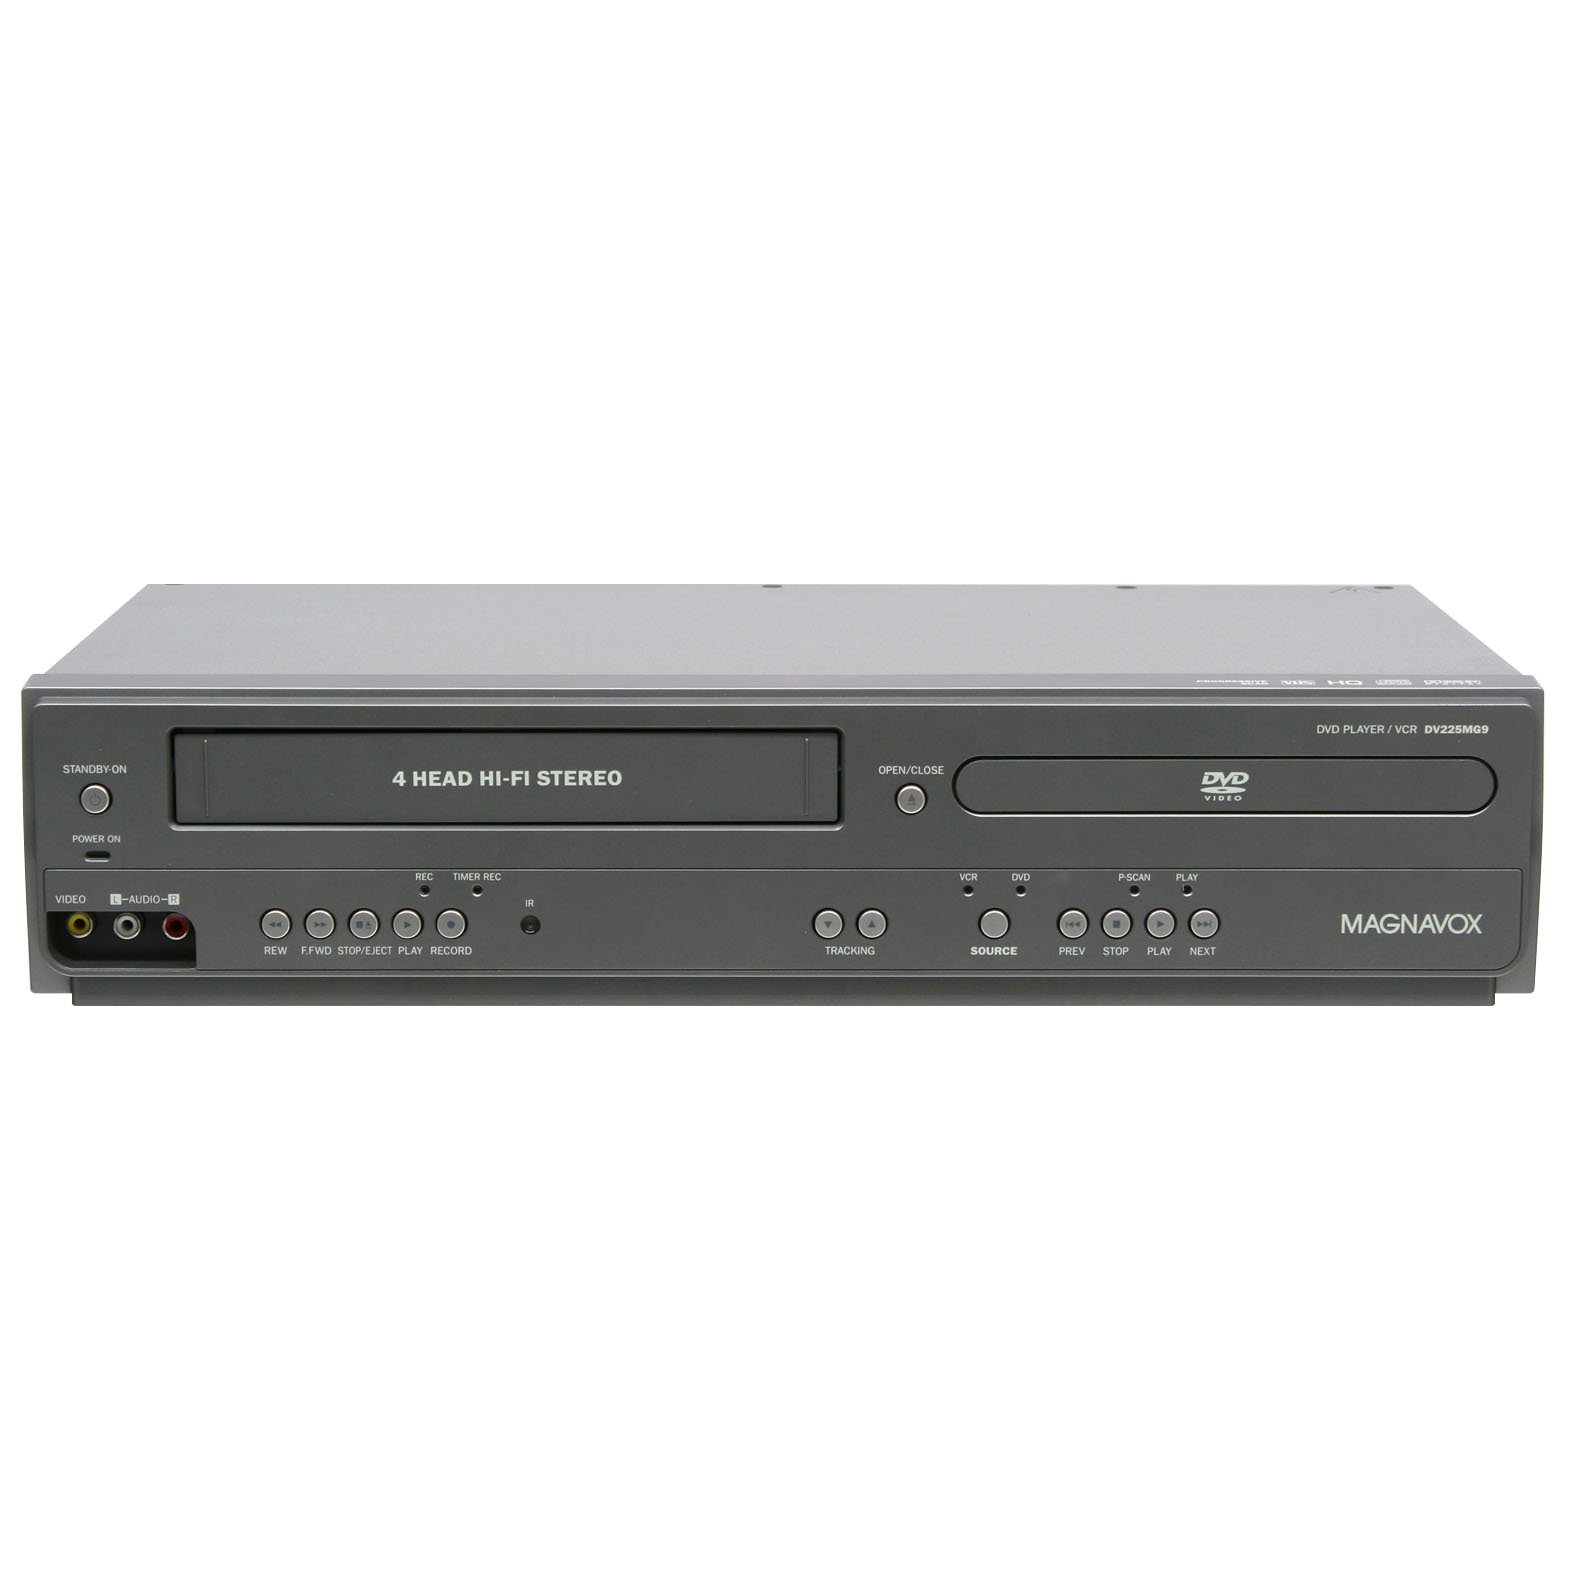 Magnavox Odtwarzacz DVD DV225MG9 i 4-głowicowy magnetowid stereo Hi-Fi z możliwością nagrywania przez wejście liniowe